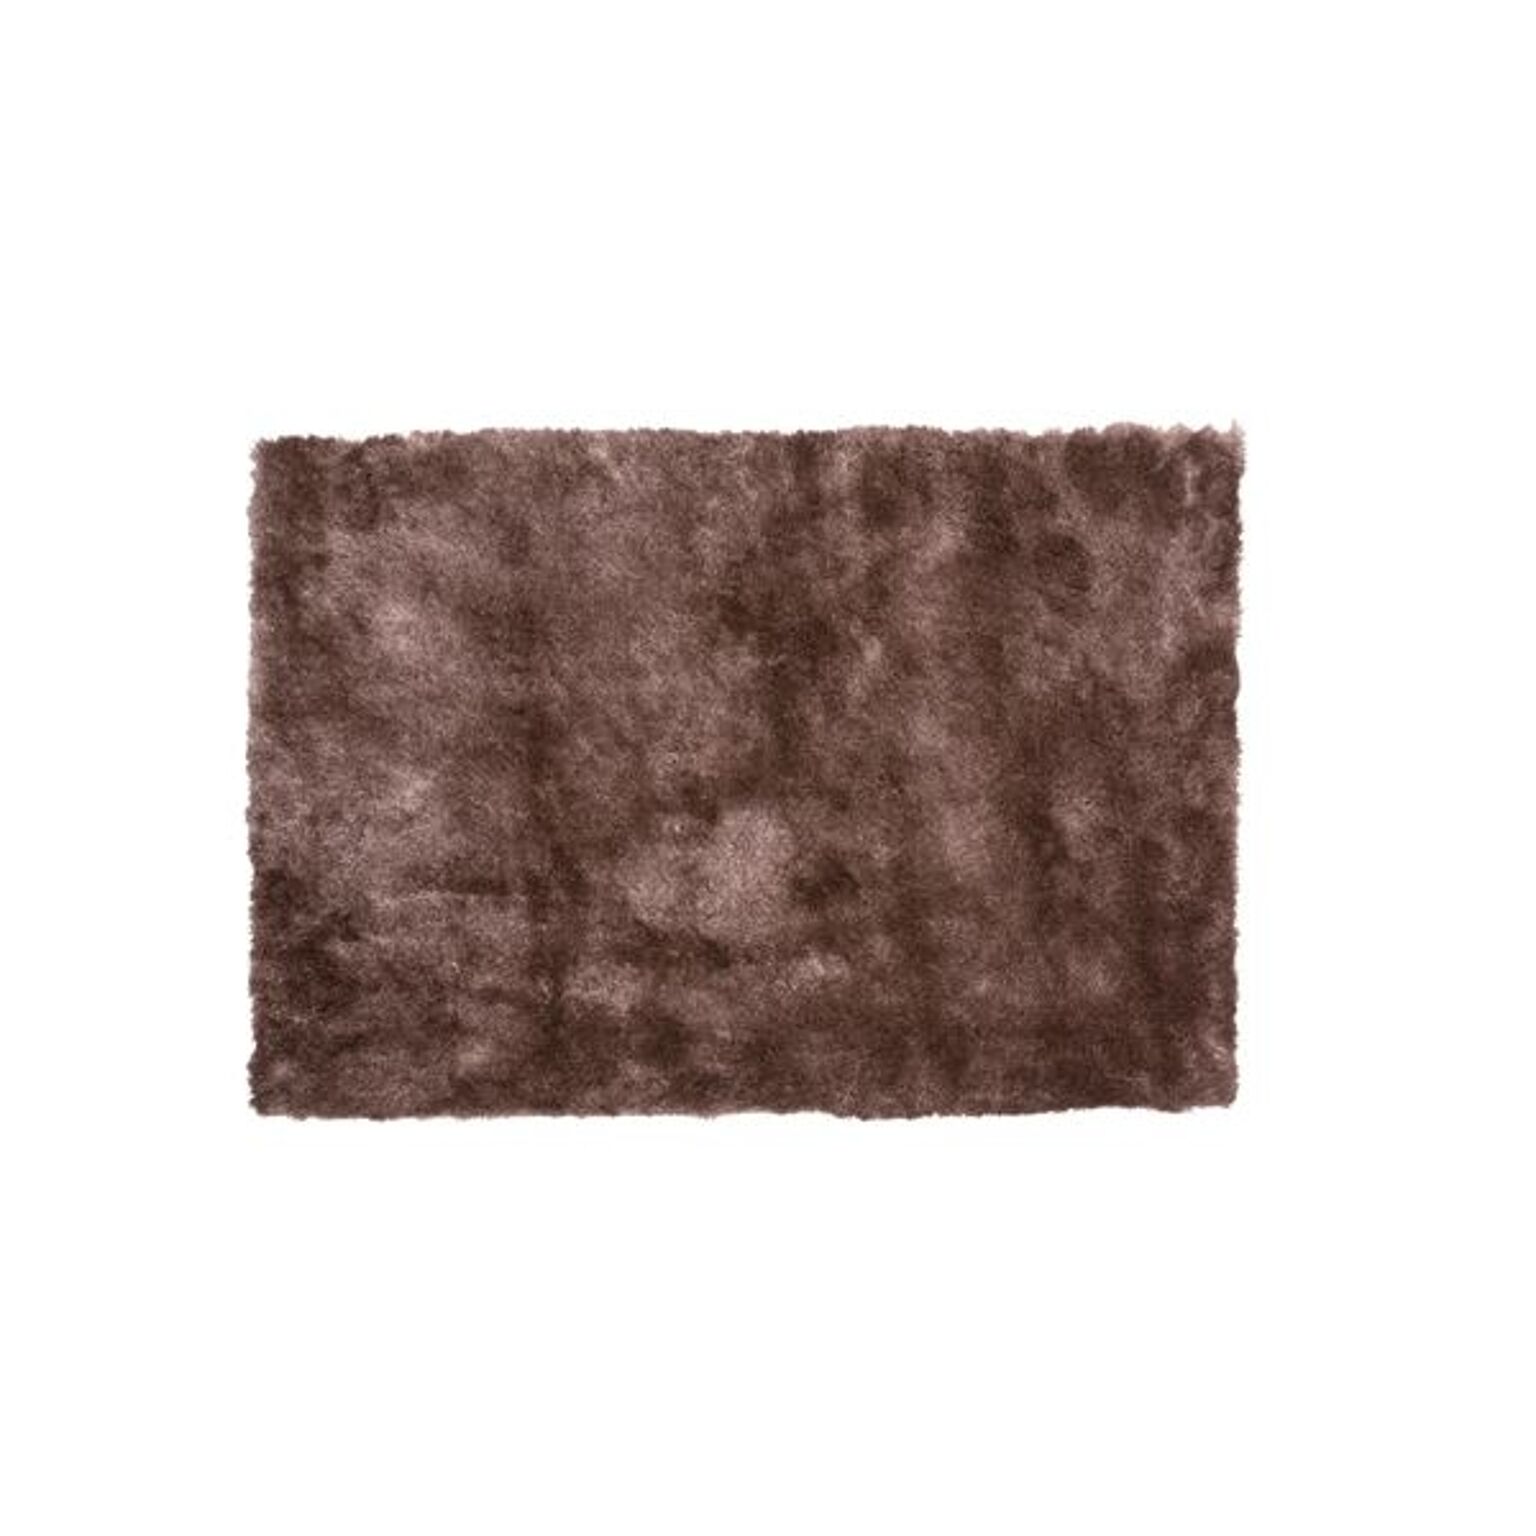 ラグマット 絨毯 90×130cm ブラウン 長方形 裏面 防滑加工 シャギーラグマット リビング ダイニング ベッドルーム 寝室